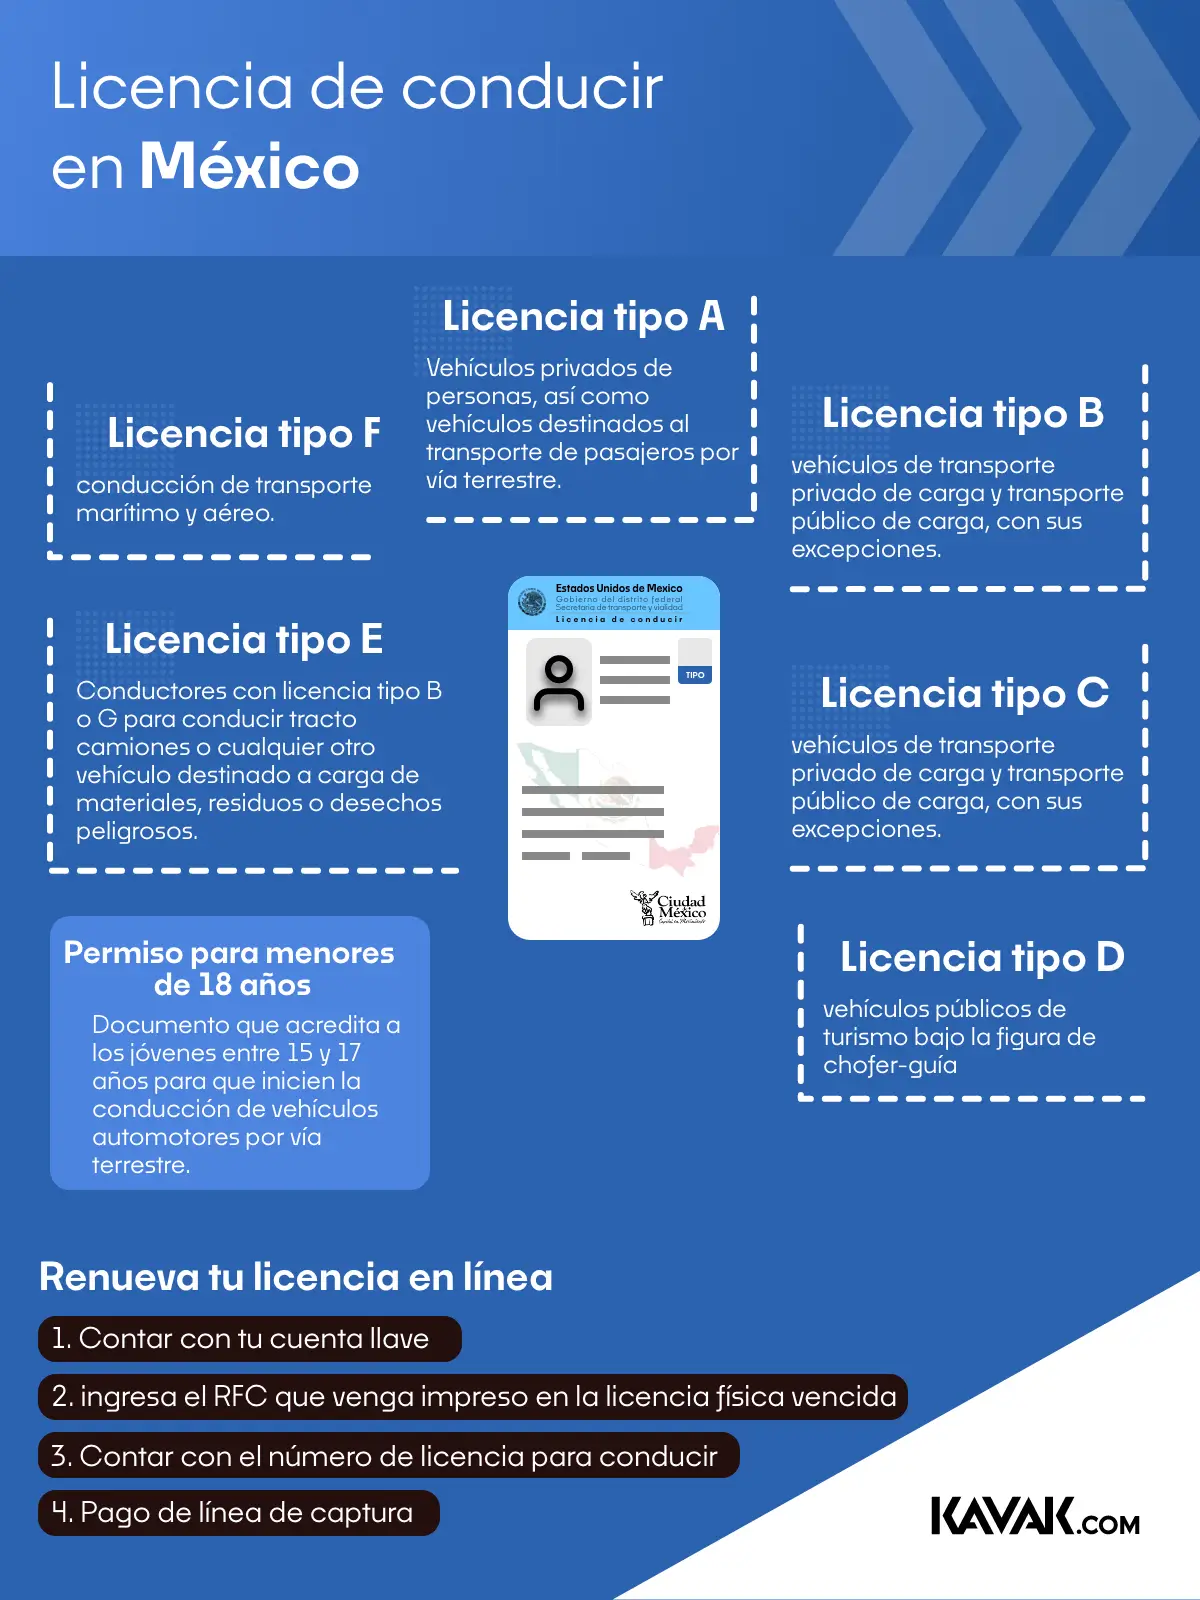 Licencia de conducir en México.webp